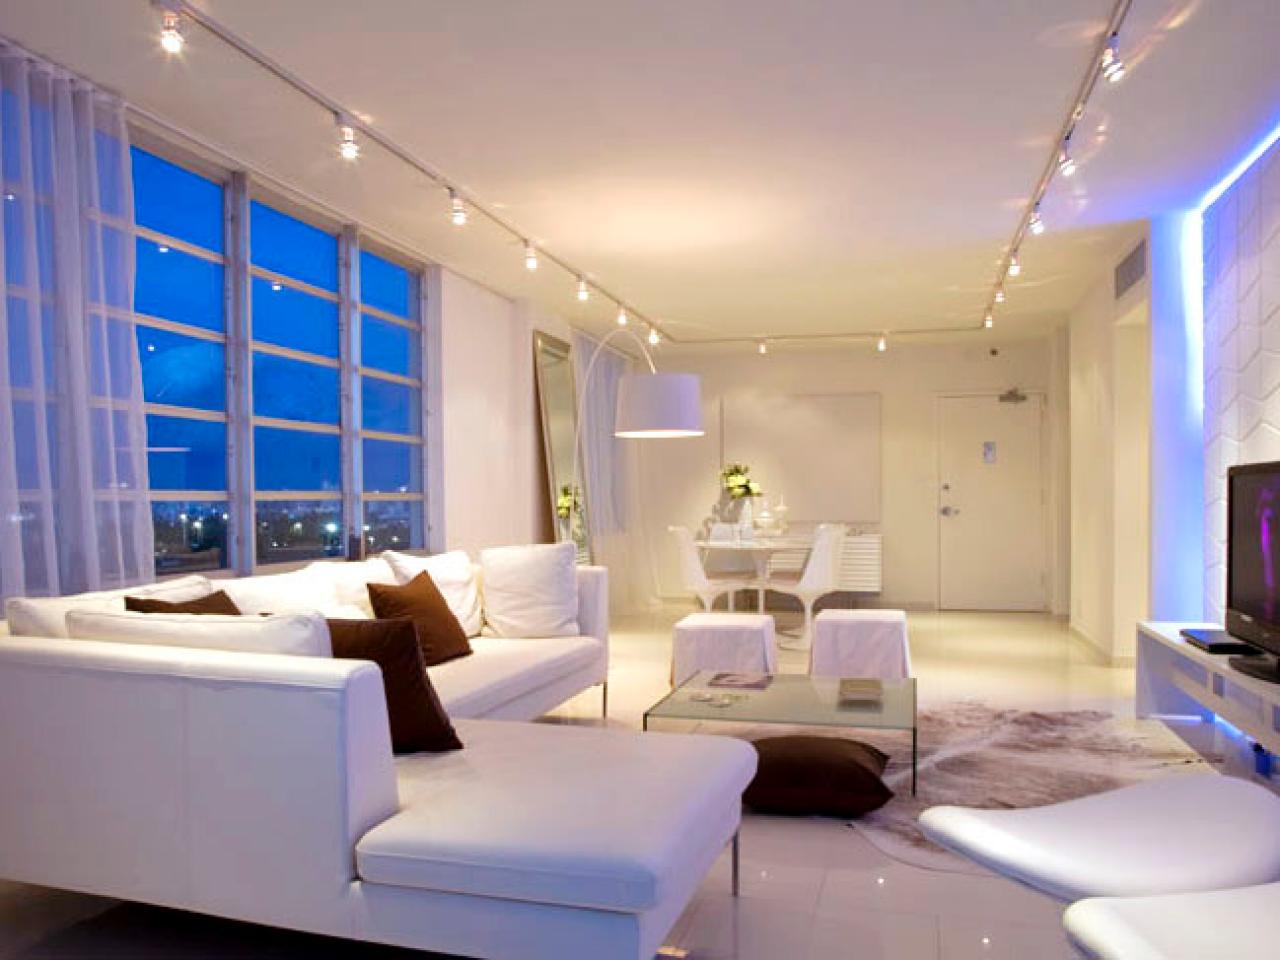 Living Room Lighting Tips HGTV